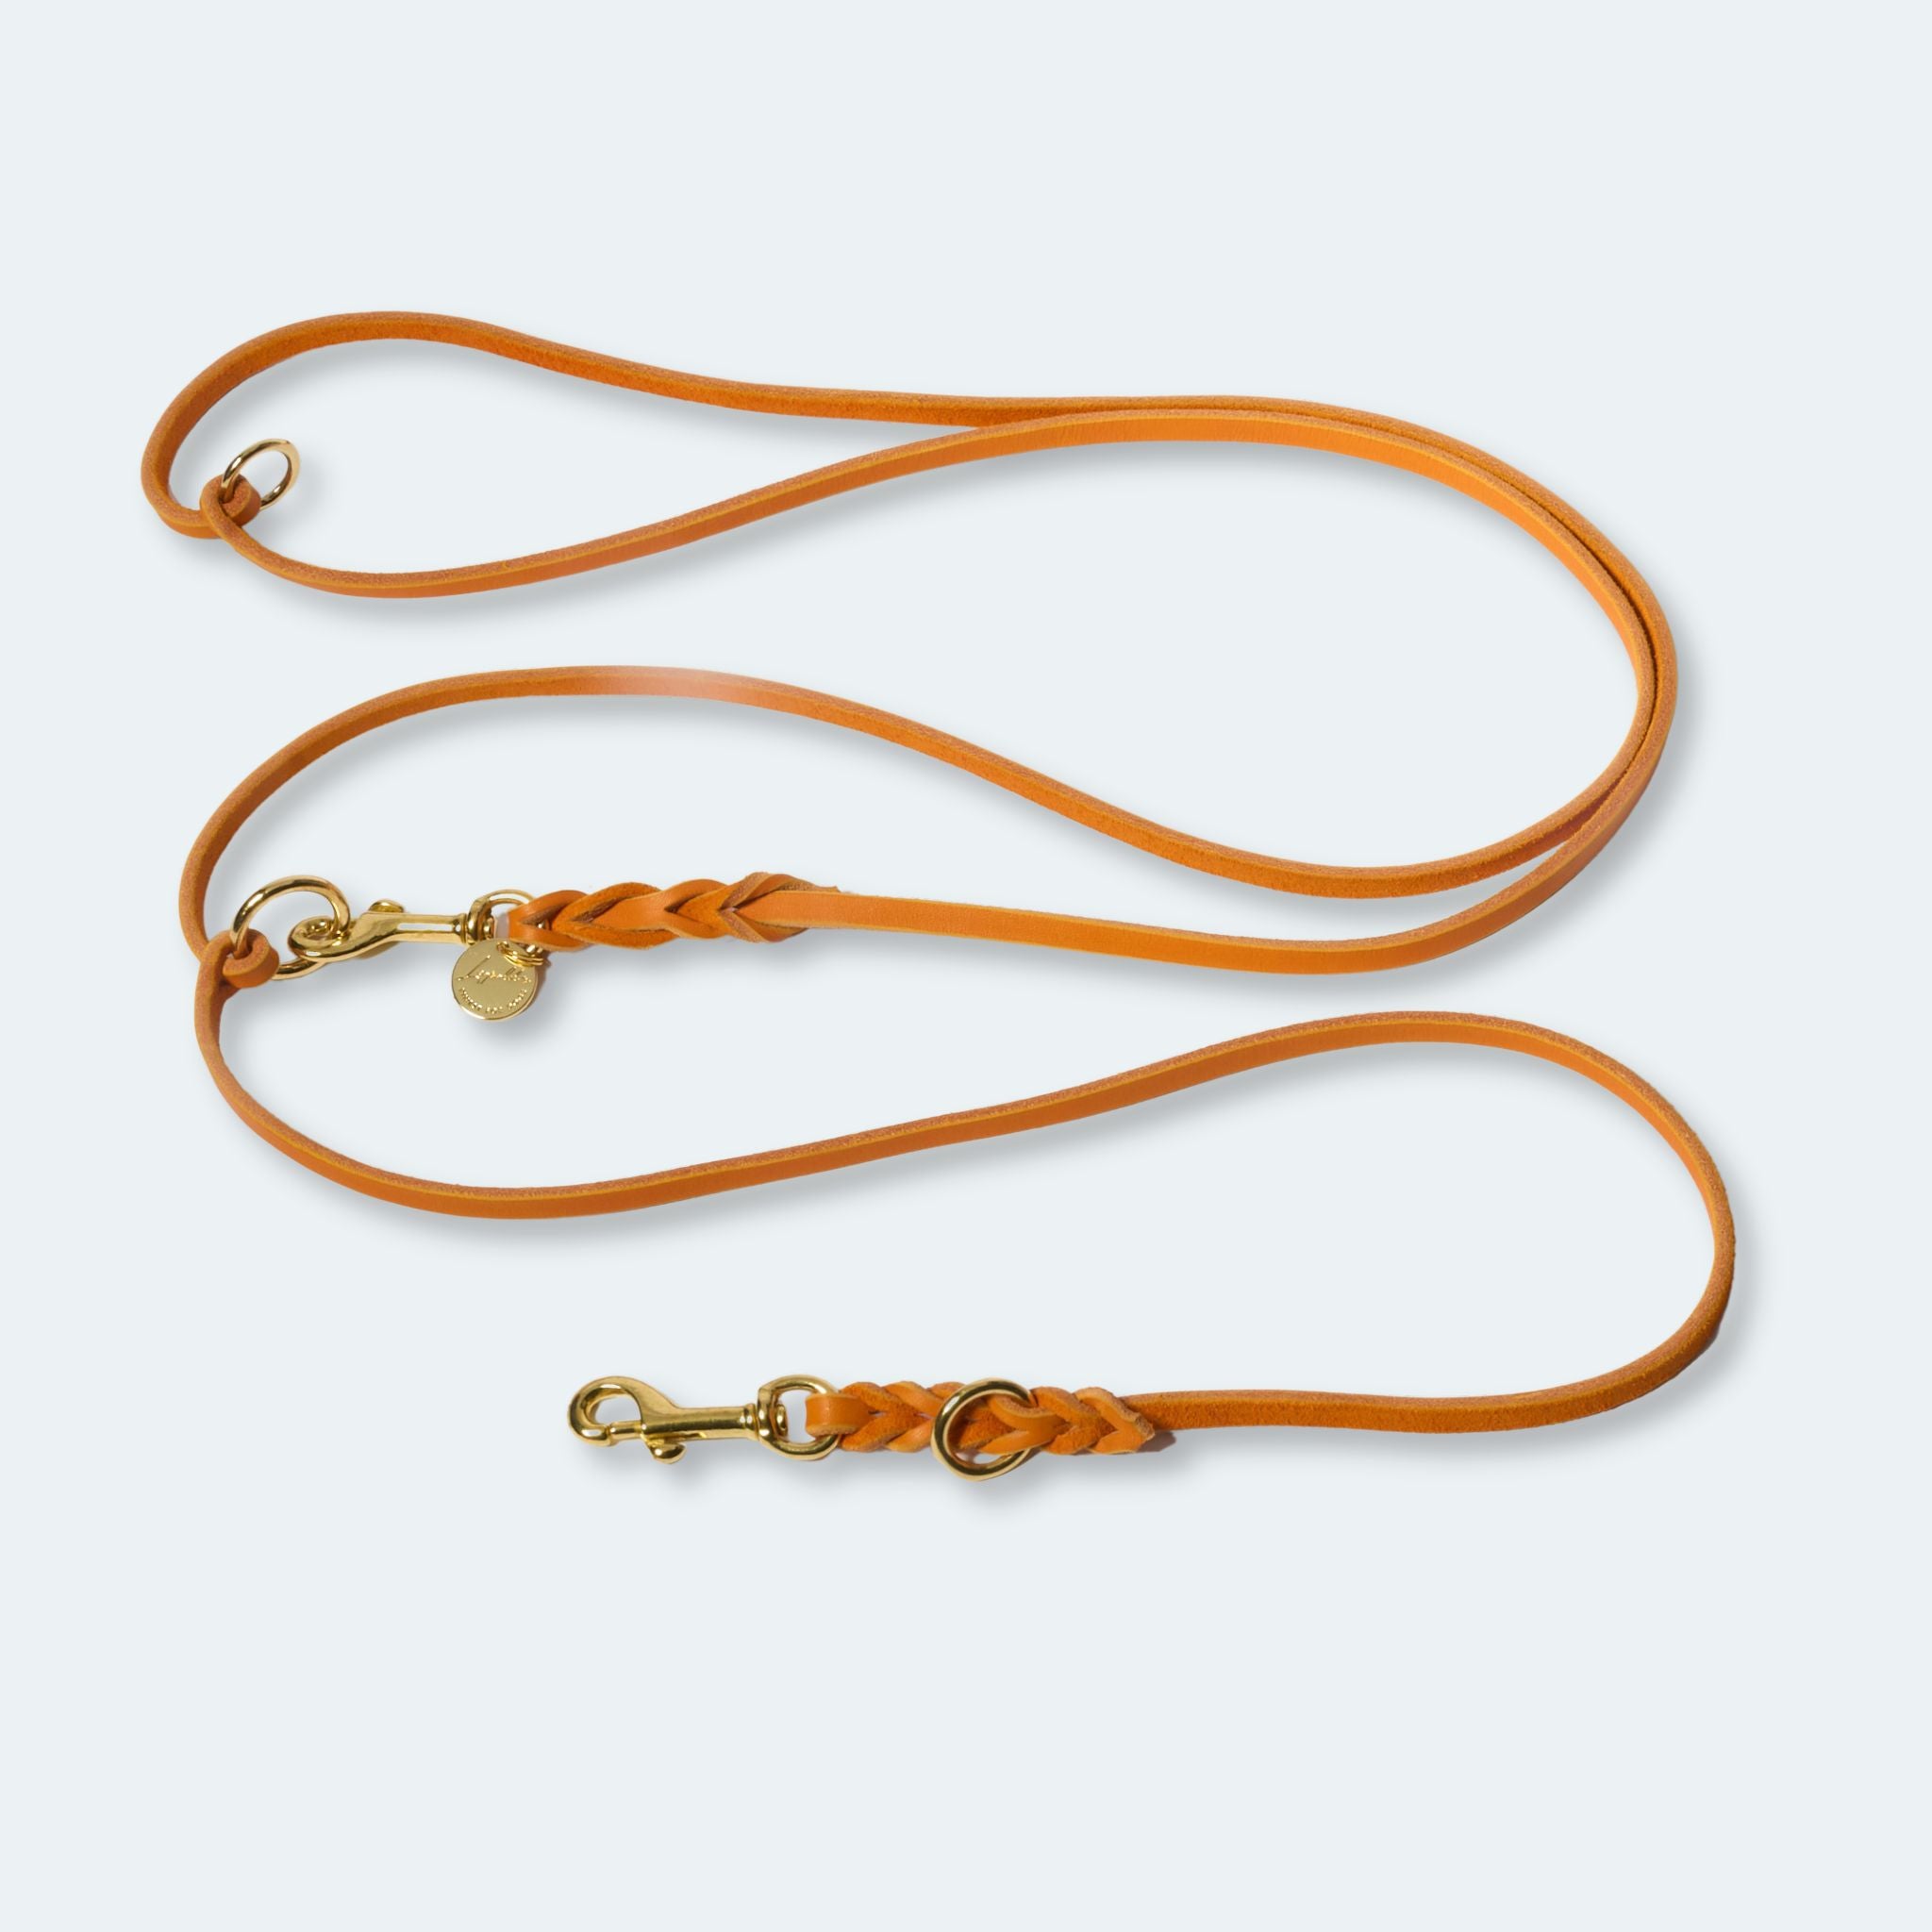 Hundeleine verstellbar Fettleder Orange-Gold   - von Leopold's kaufen bei leopolds-finest [Orange-Gold]